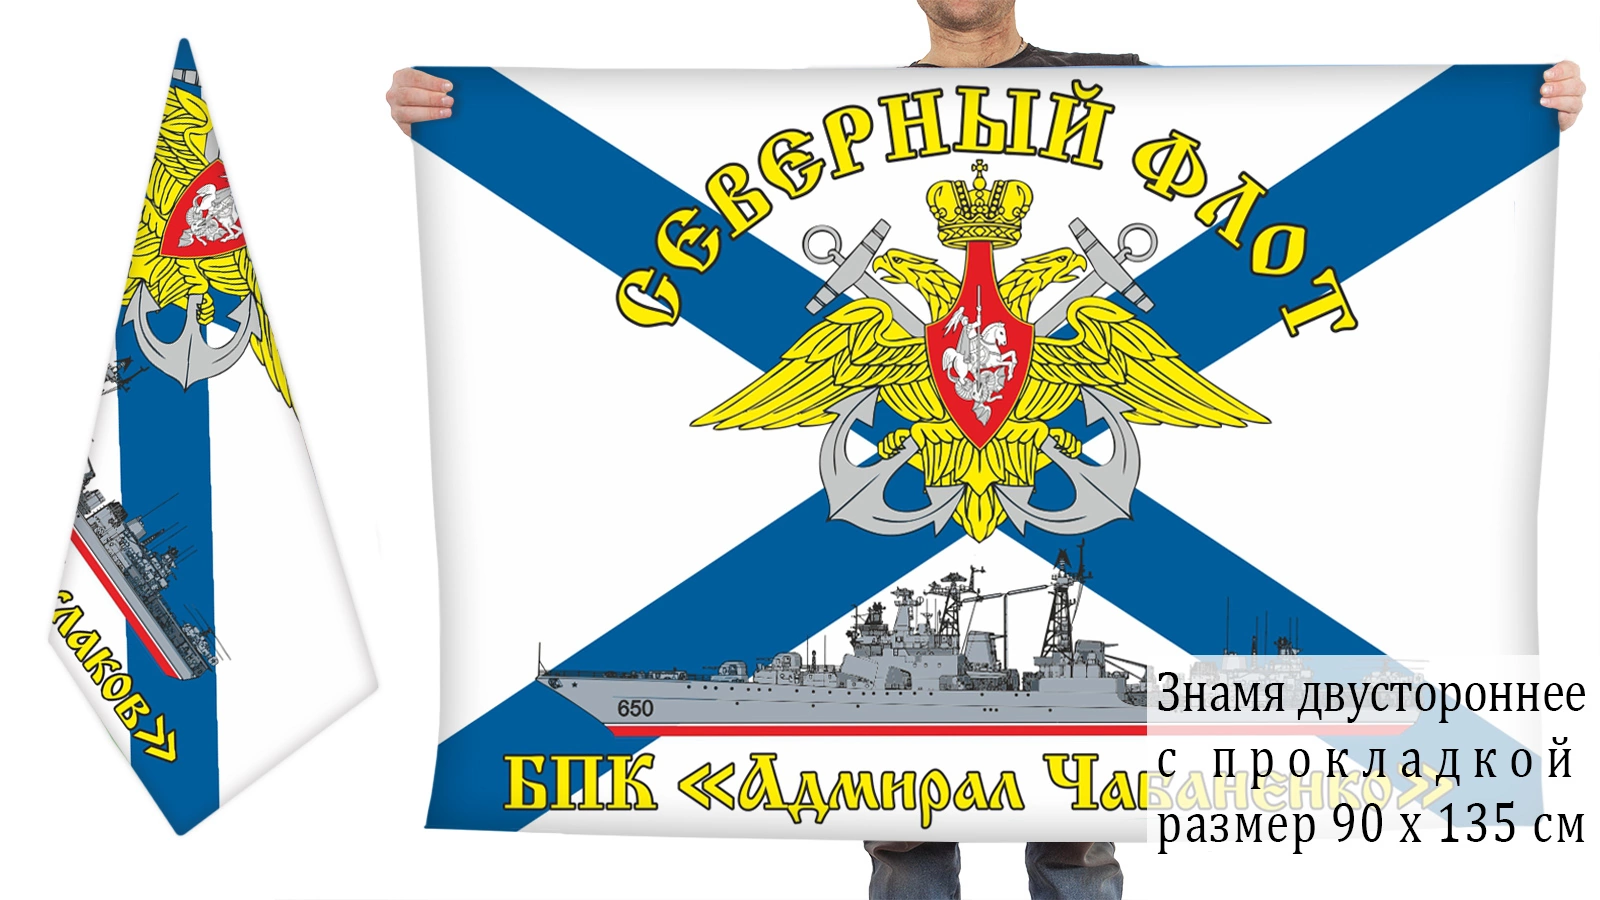 Двусторонний флаг БПК "Адмирал Чабаненко"